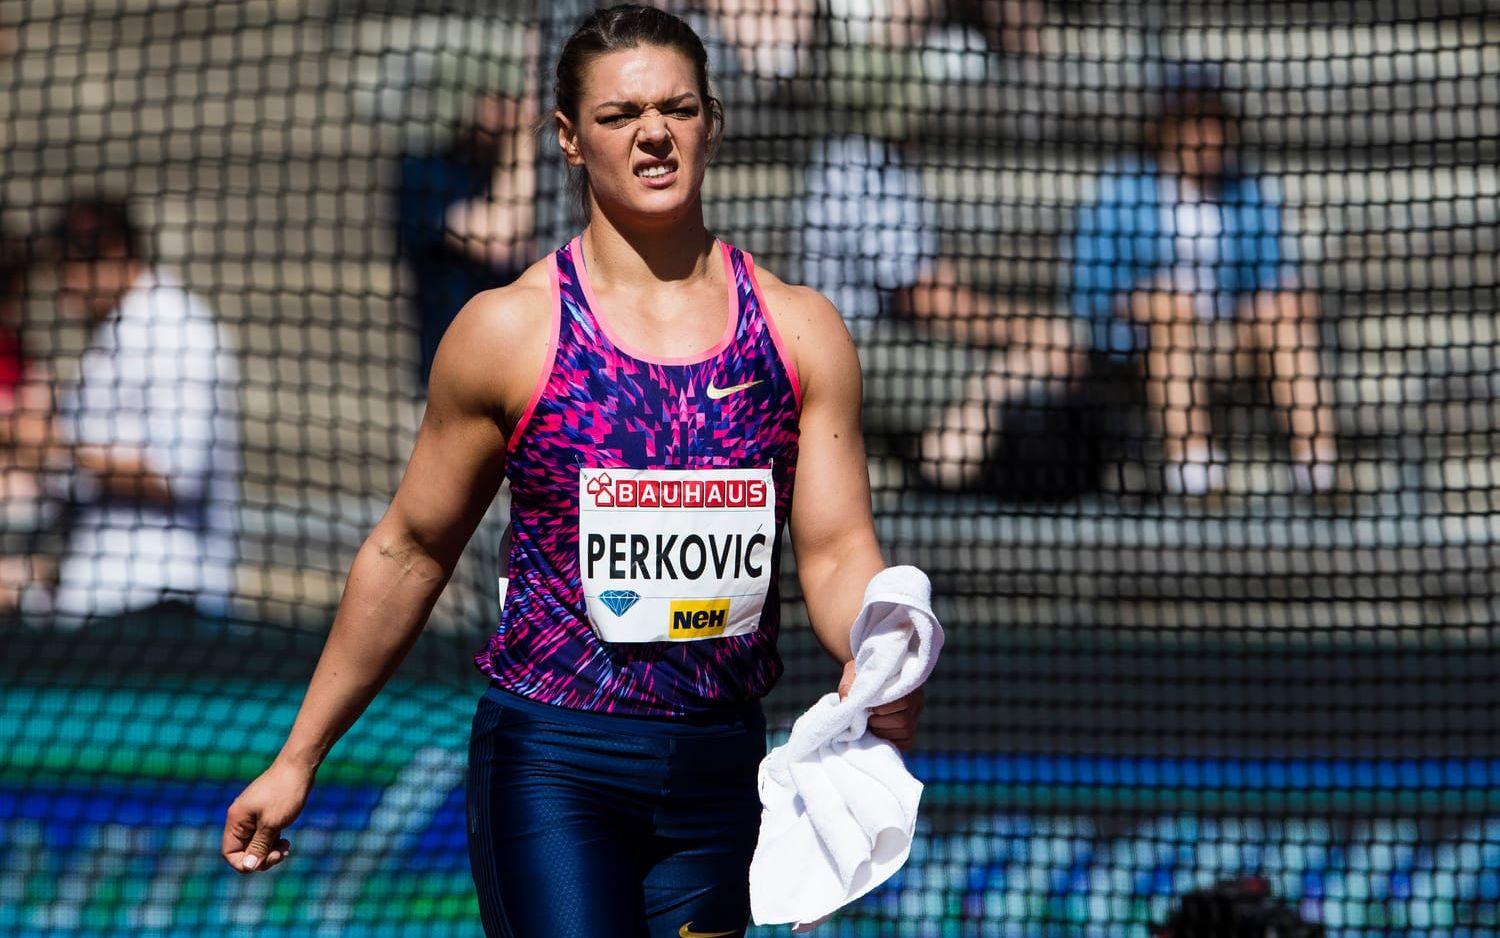 Sandra Perkovic, diskus. Wlodarczyks motsvarighet i diskus. Världens bästa i år efter år och hon är bättre än någonsin lagom till VM. 71.41 i mitten av juli är ett besked som gör konkurrenterna knäsvaga. Bild: Bildbyrån.